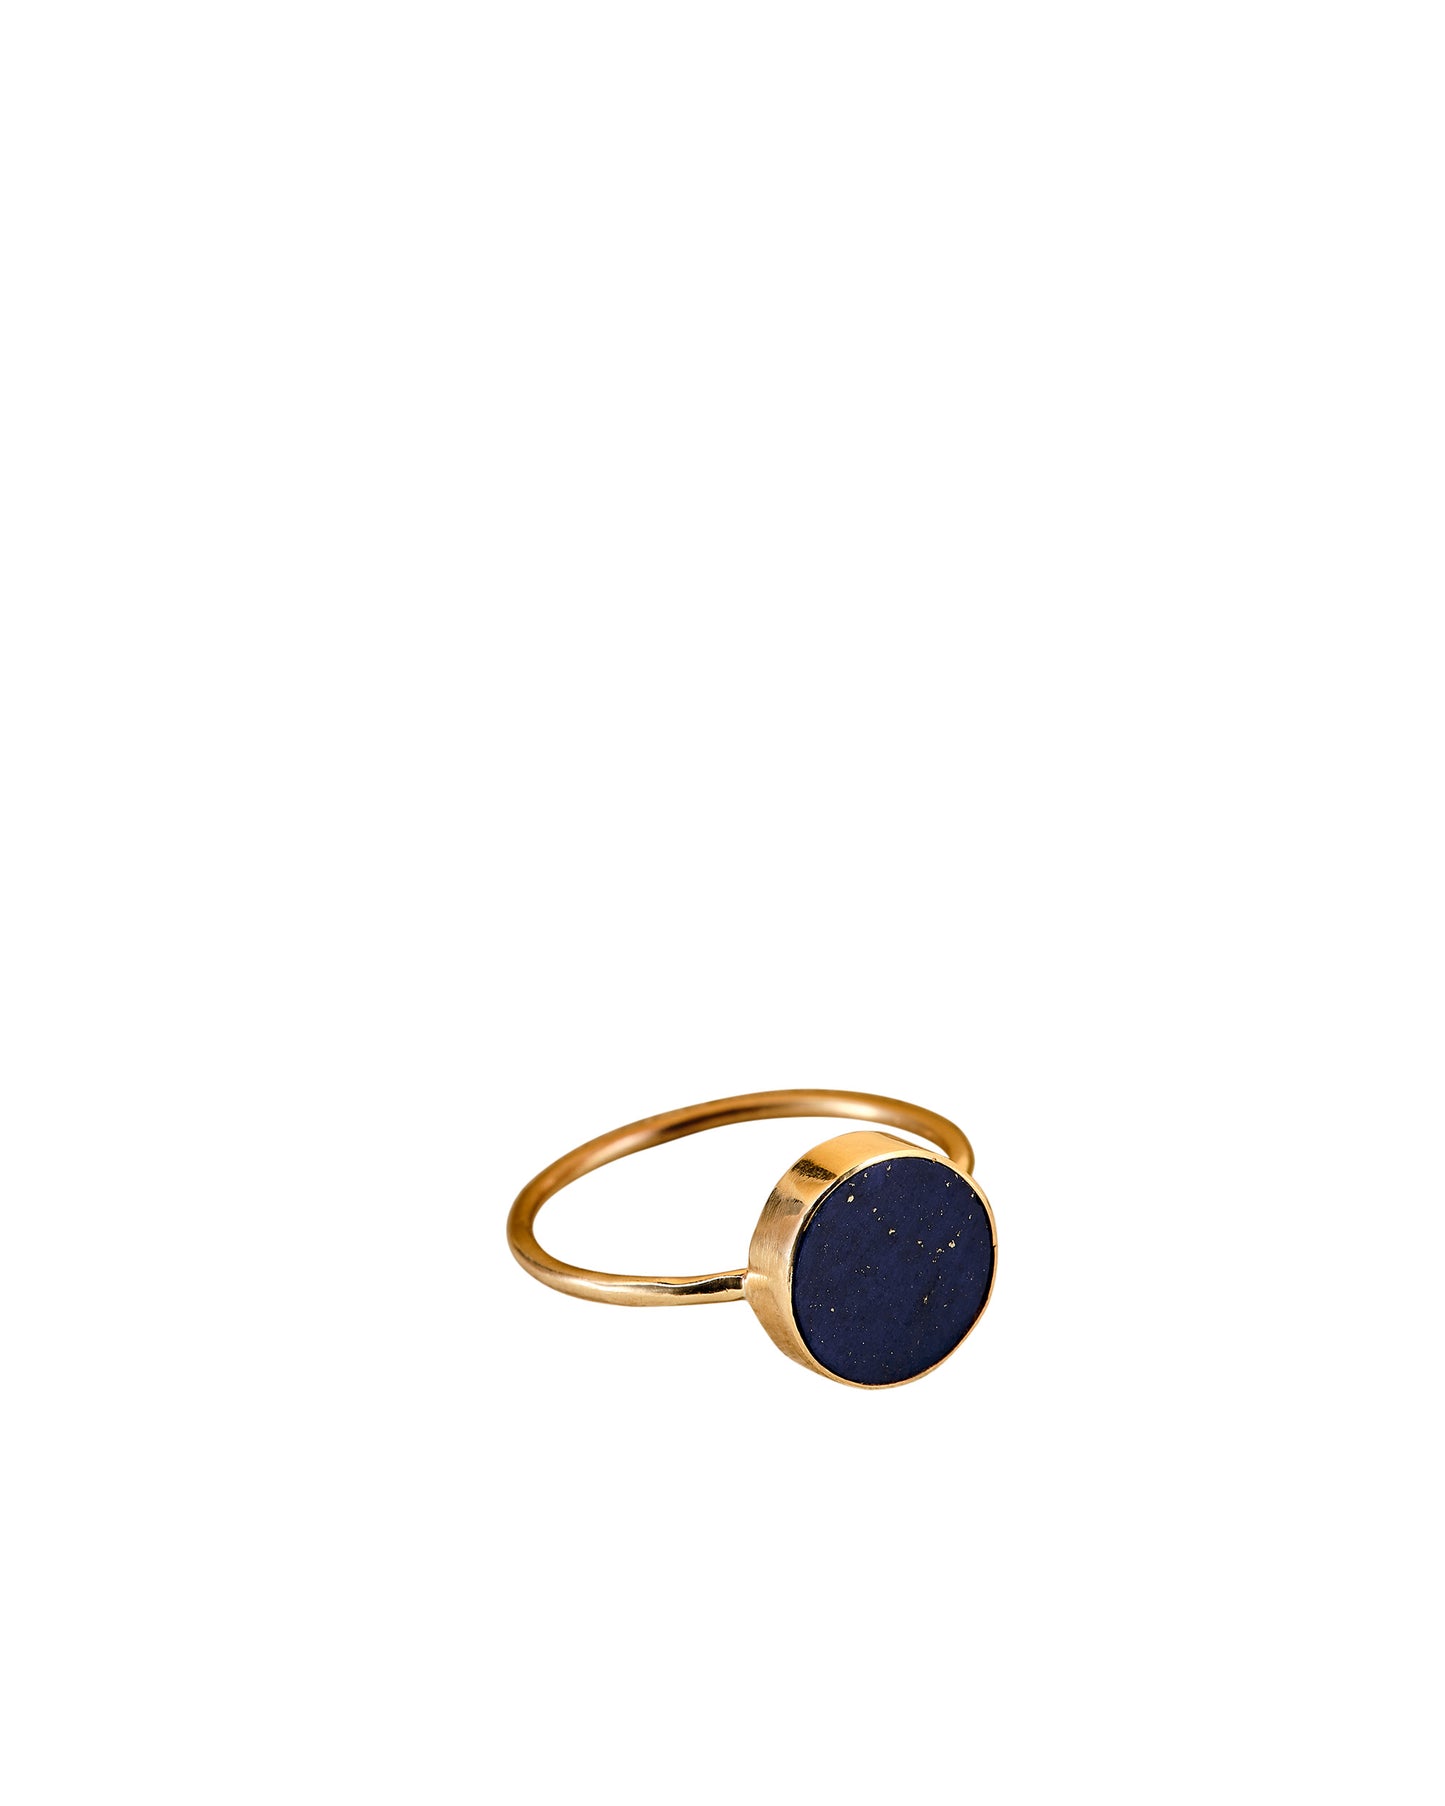 Stellar blue lapis lazuli gold disc ring